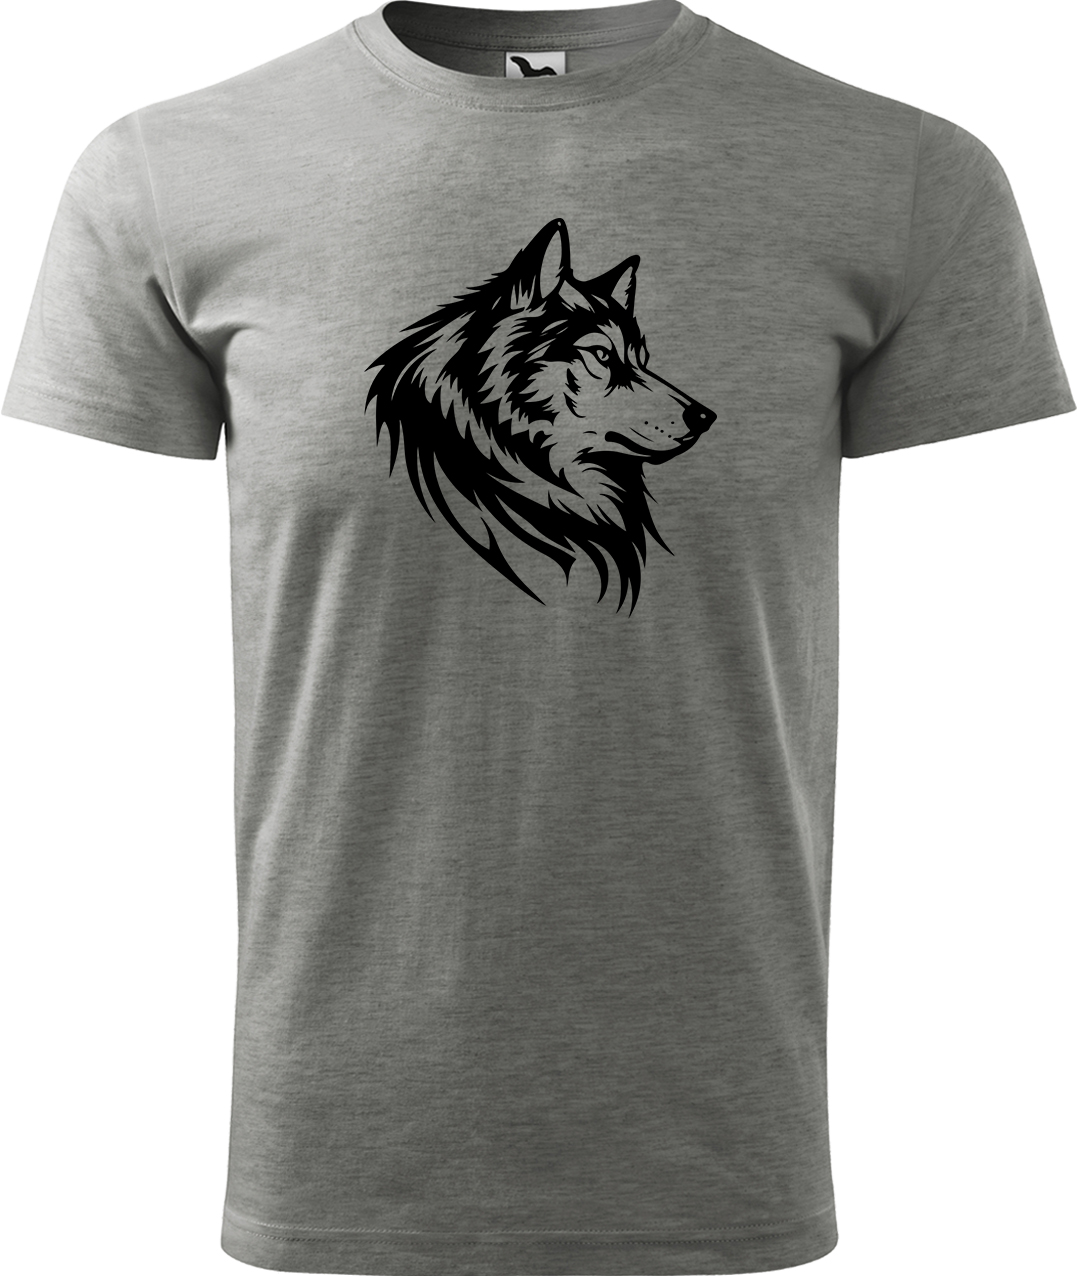 Pánské tričko s vlkem - Wolf Velikost: 2XL, Barva: Tmavě šedý melír (12), Střih: pánský